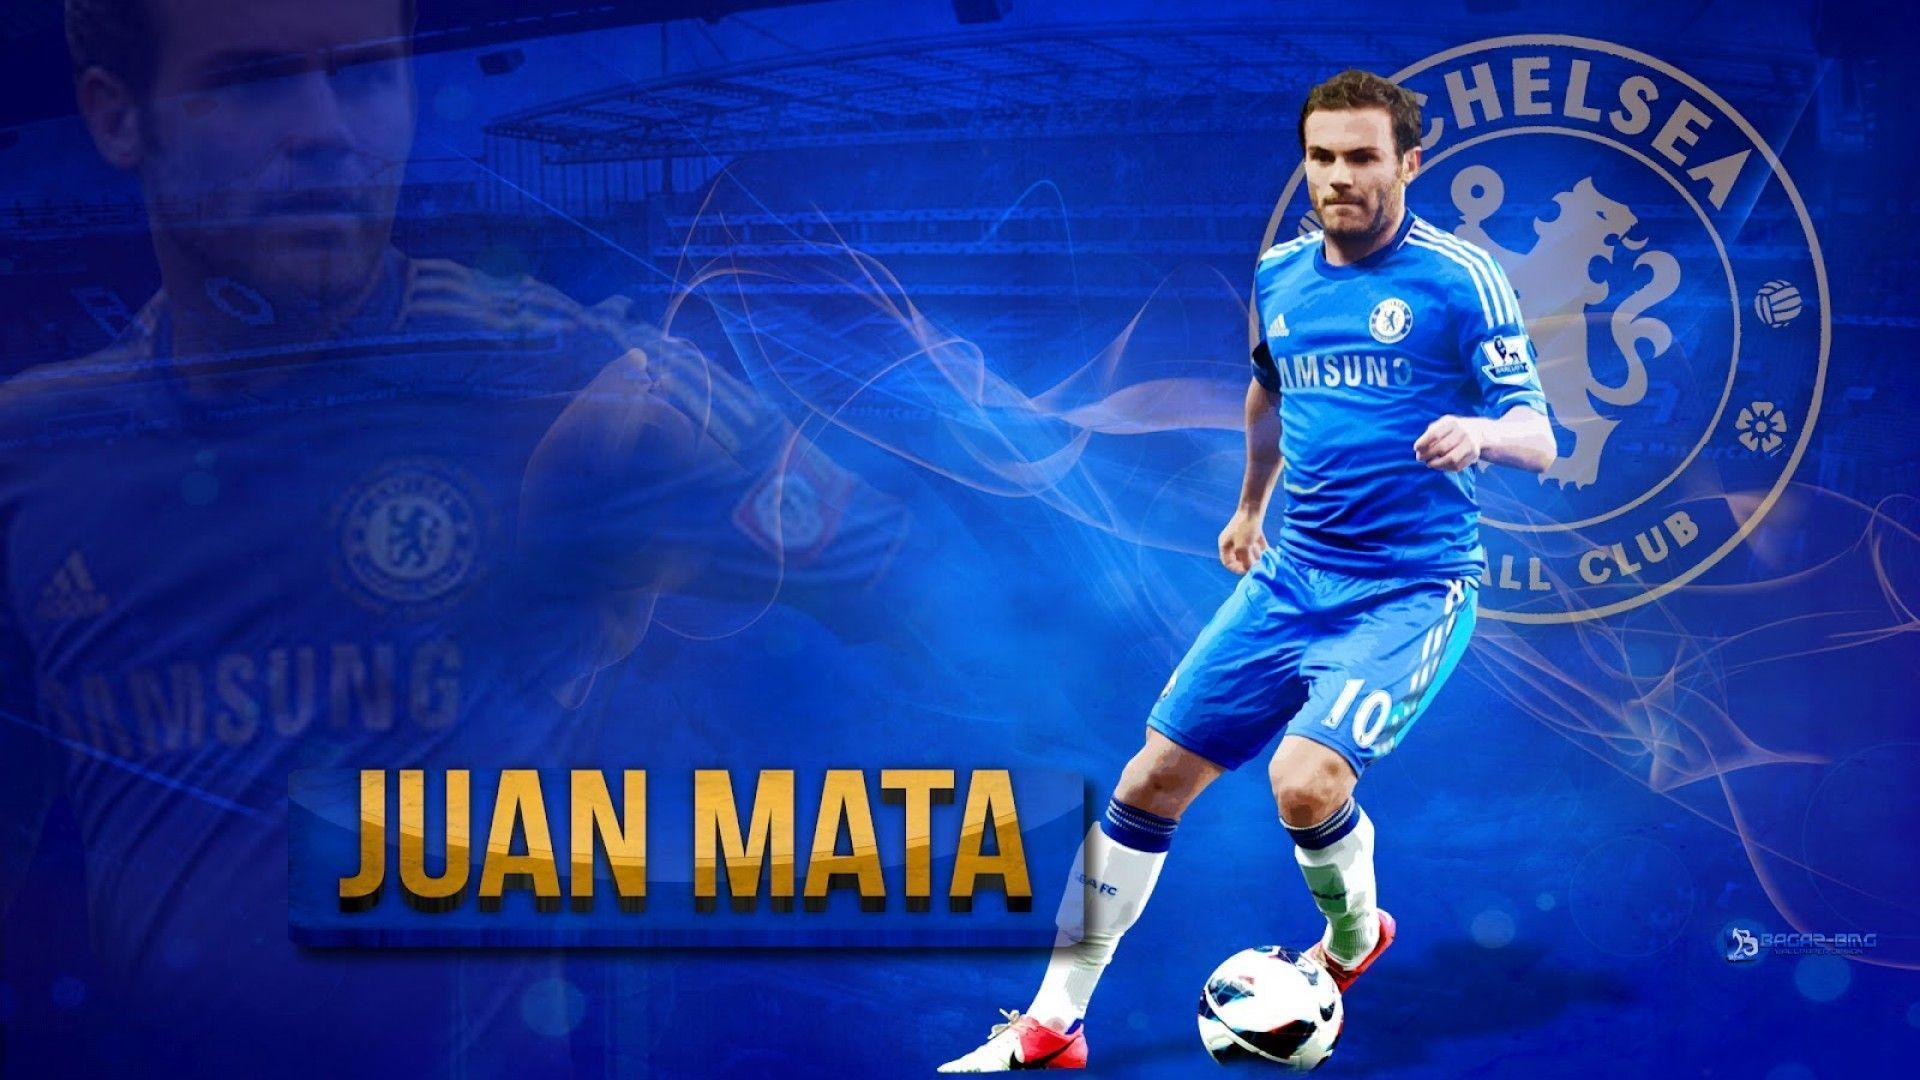 Juan Mata Chelsea Wallpaper